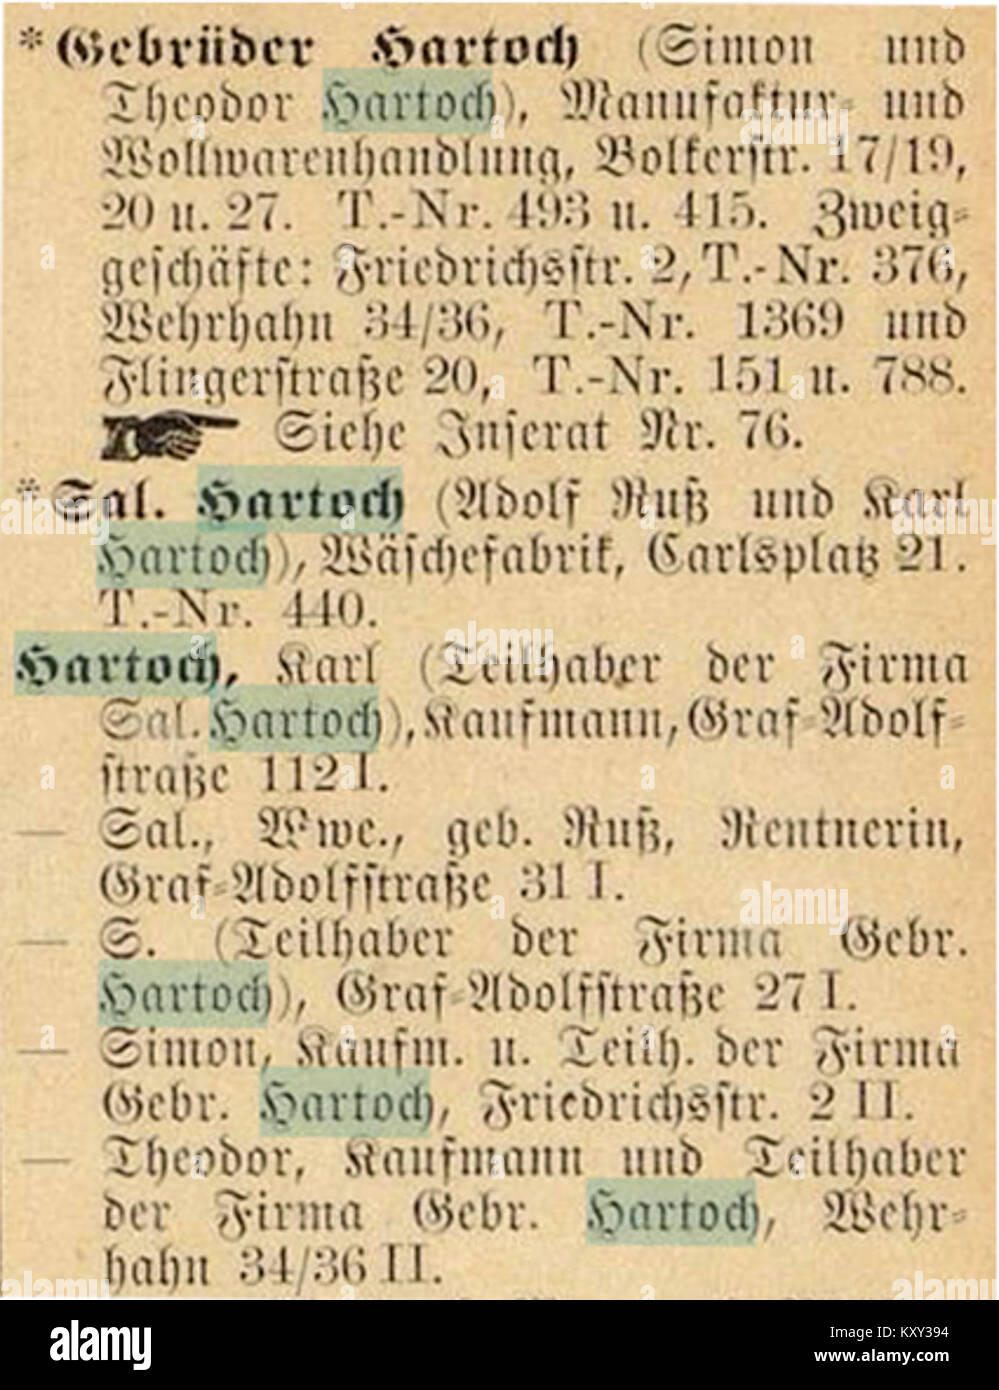 Gebrüder Hartoch in Adressbuch 1902 Stockfoto